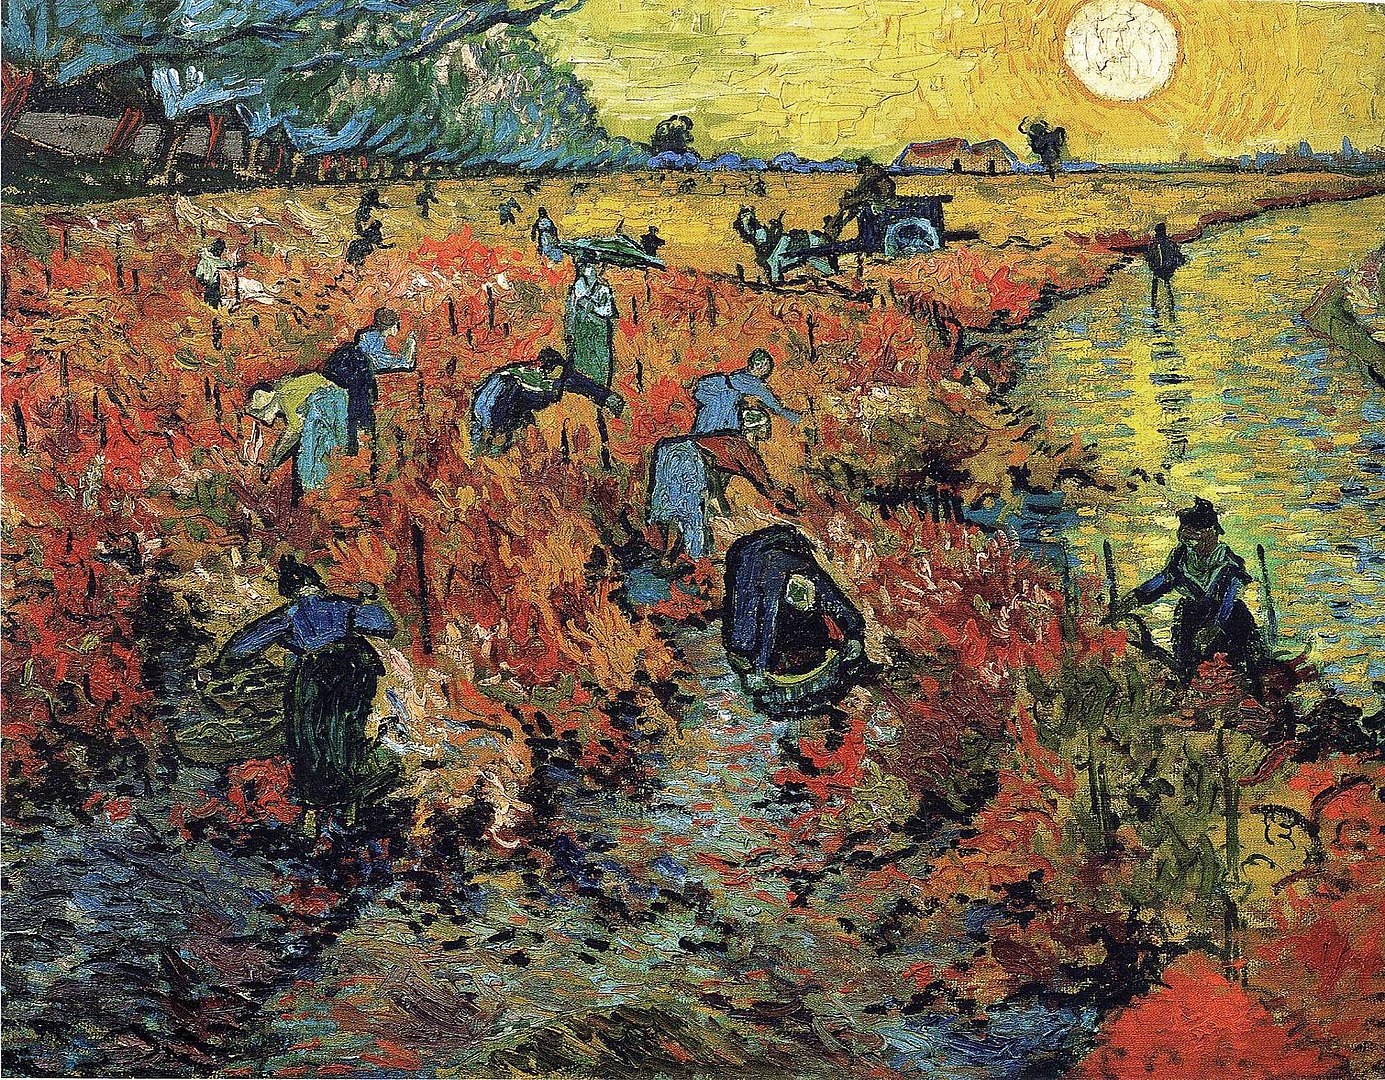 Có thật cả cuộc đời Van Gogh chỉ bán được một bức tranh? - 4